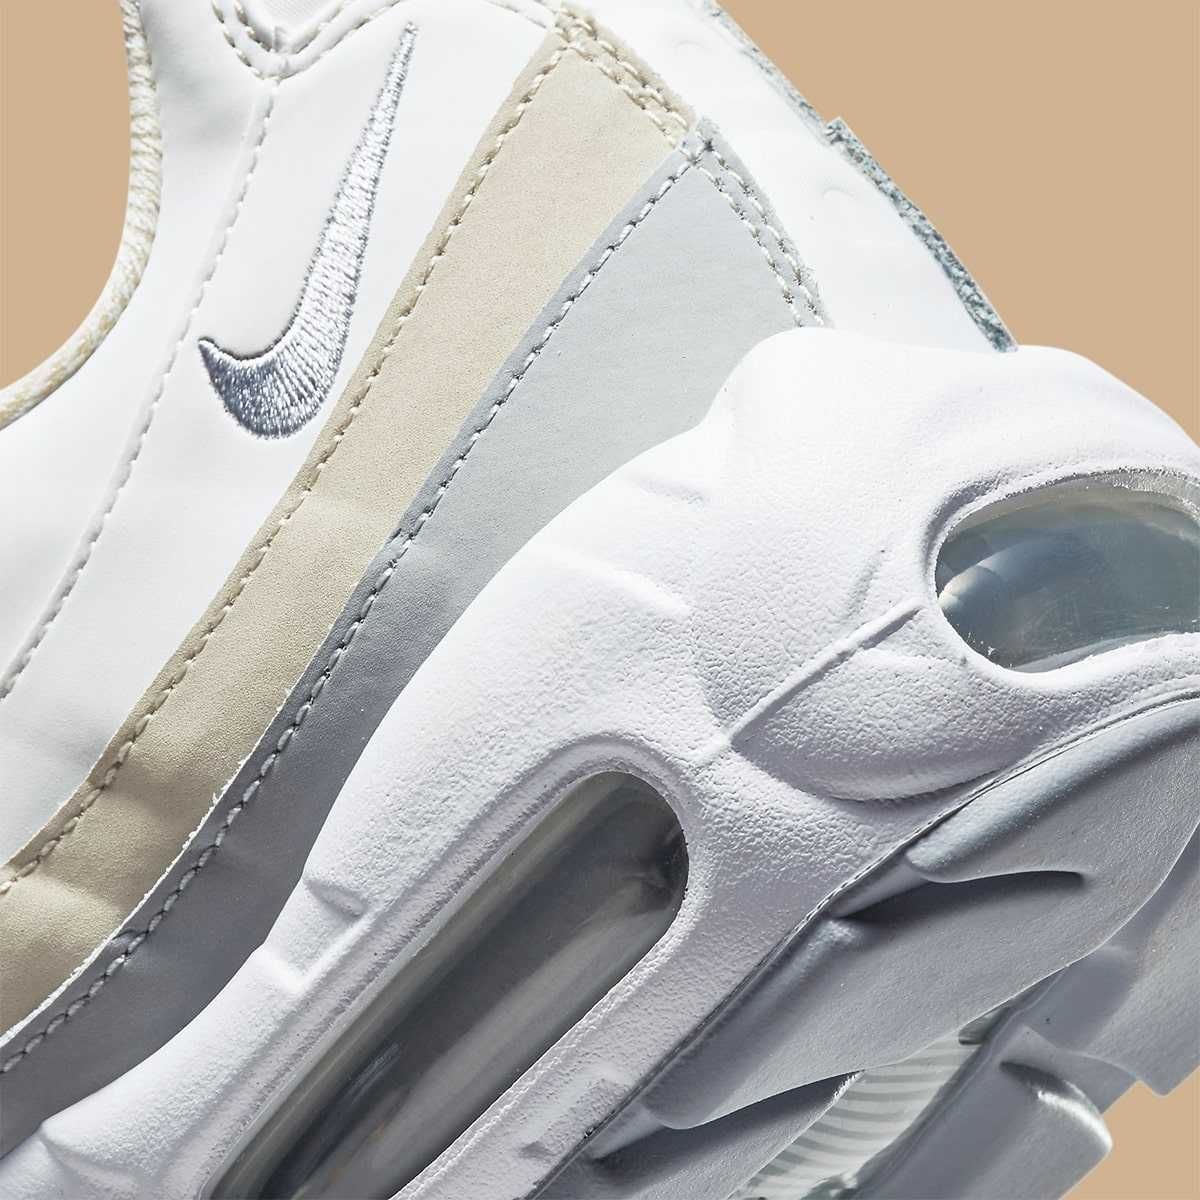 NIKE Air Max 95 Pearl White Pack, unisex,original sneakers, masura 39